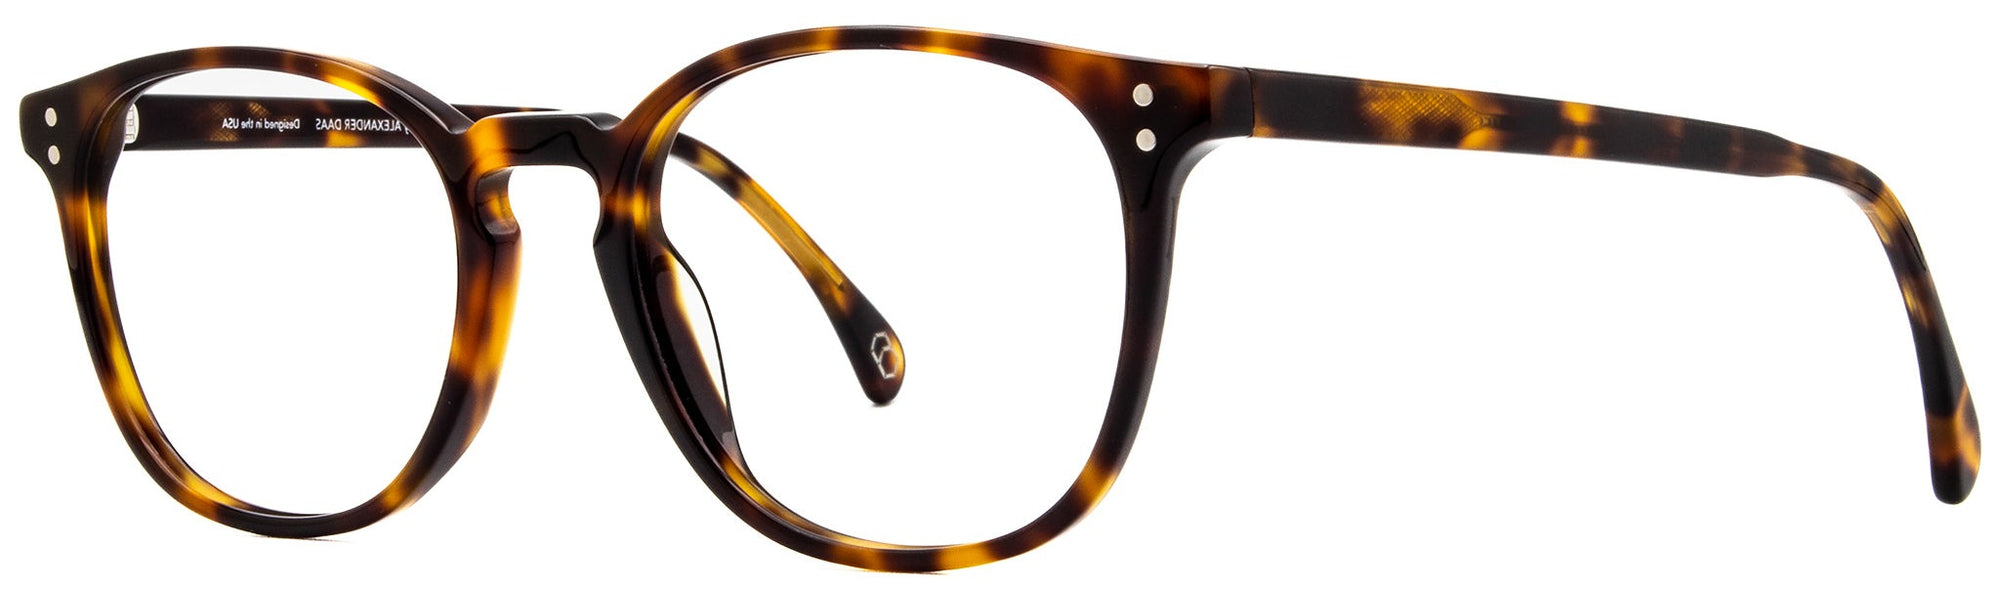 Alexander Daas - Milan Eyeglasses - Tortoise - Angle